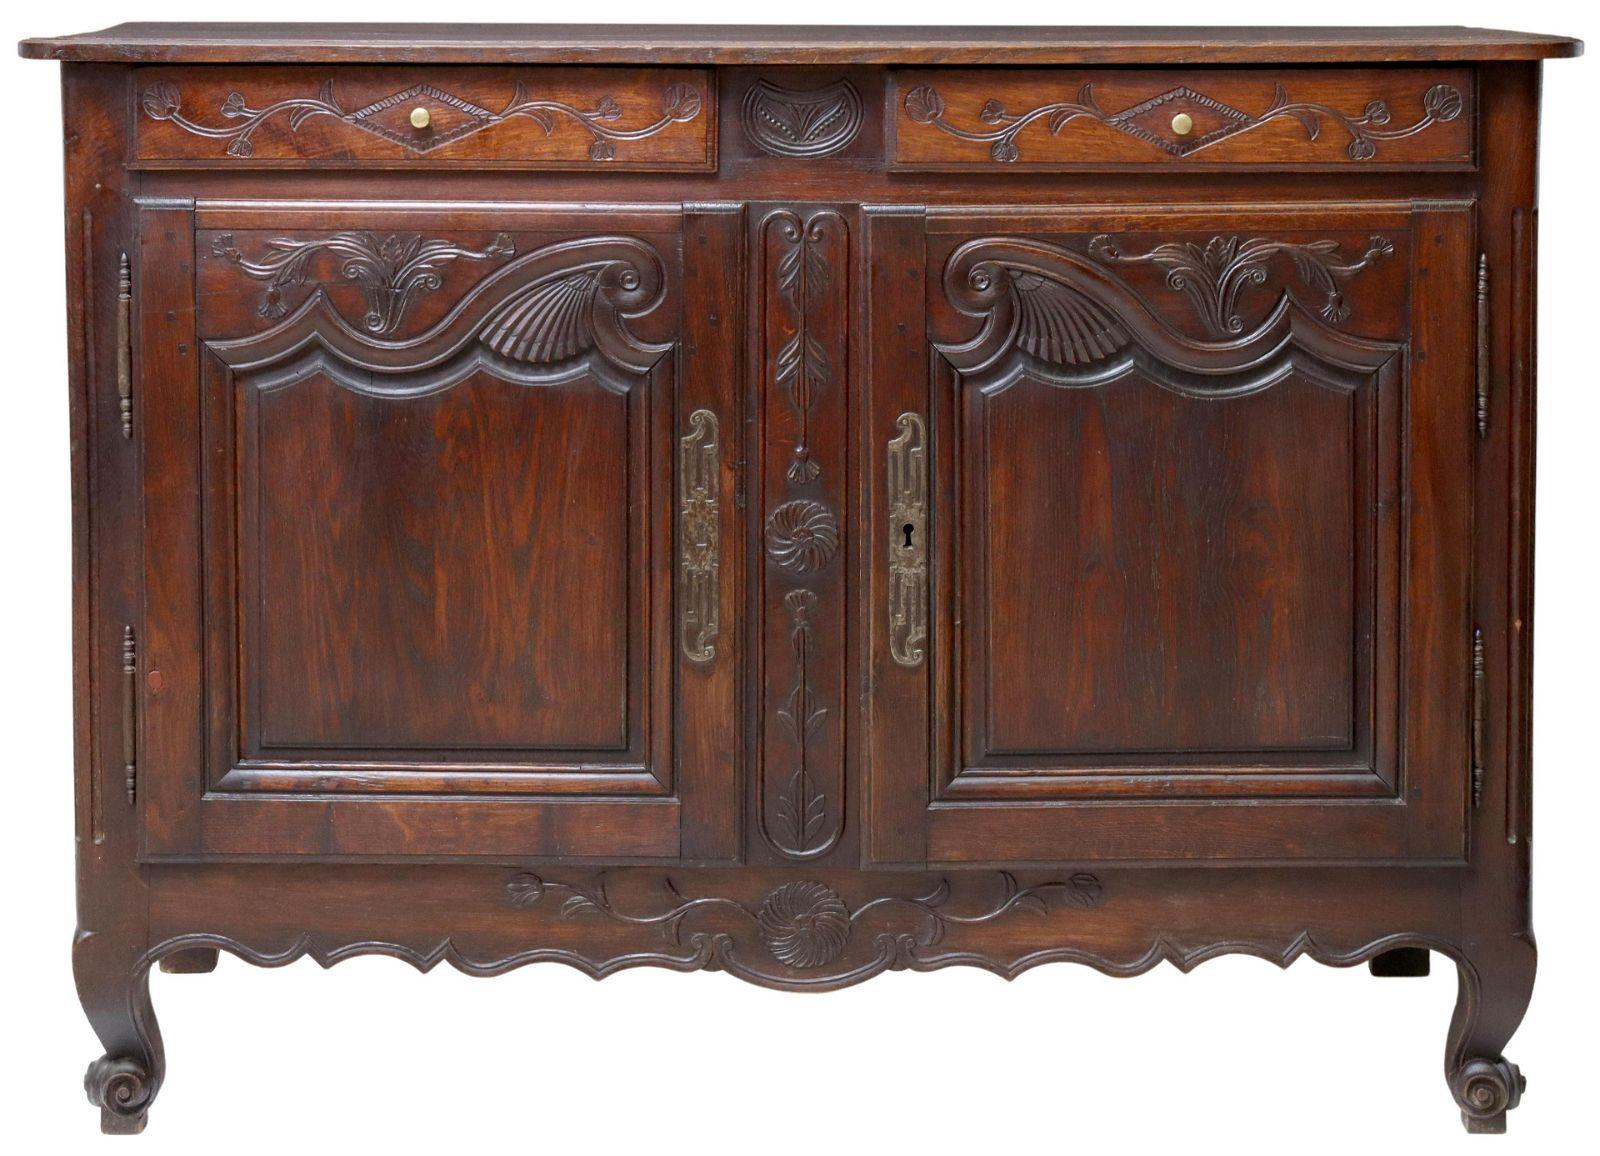 Buffet en chêne de style Louis XV, fin C.C., deux tiroirs, plus deux portes de cabinet, tablier festonné, reposant sur des pieds en forme de verticilles. Sculpture détaillée sur chaque panneau de porte.

Dimensions : environ 39 